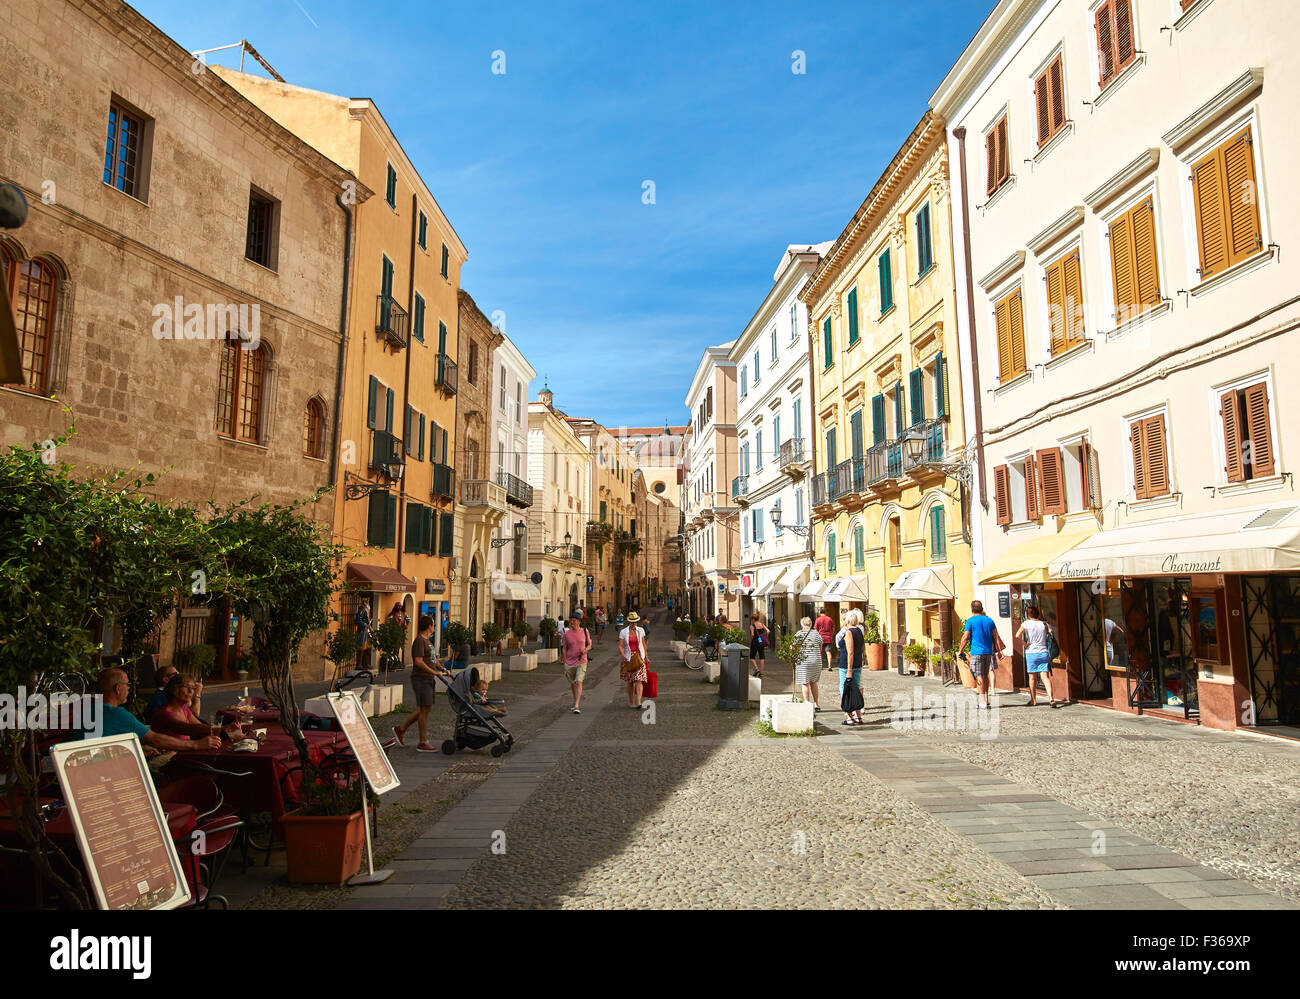 Street scene in Alghero, Sardinia Stock Photo